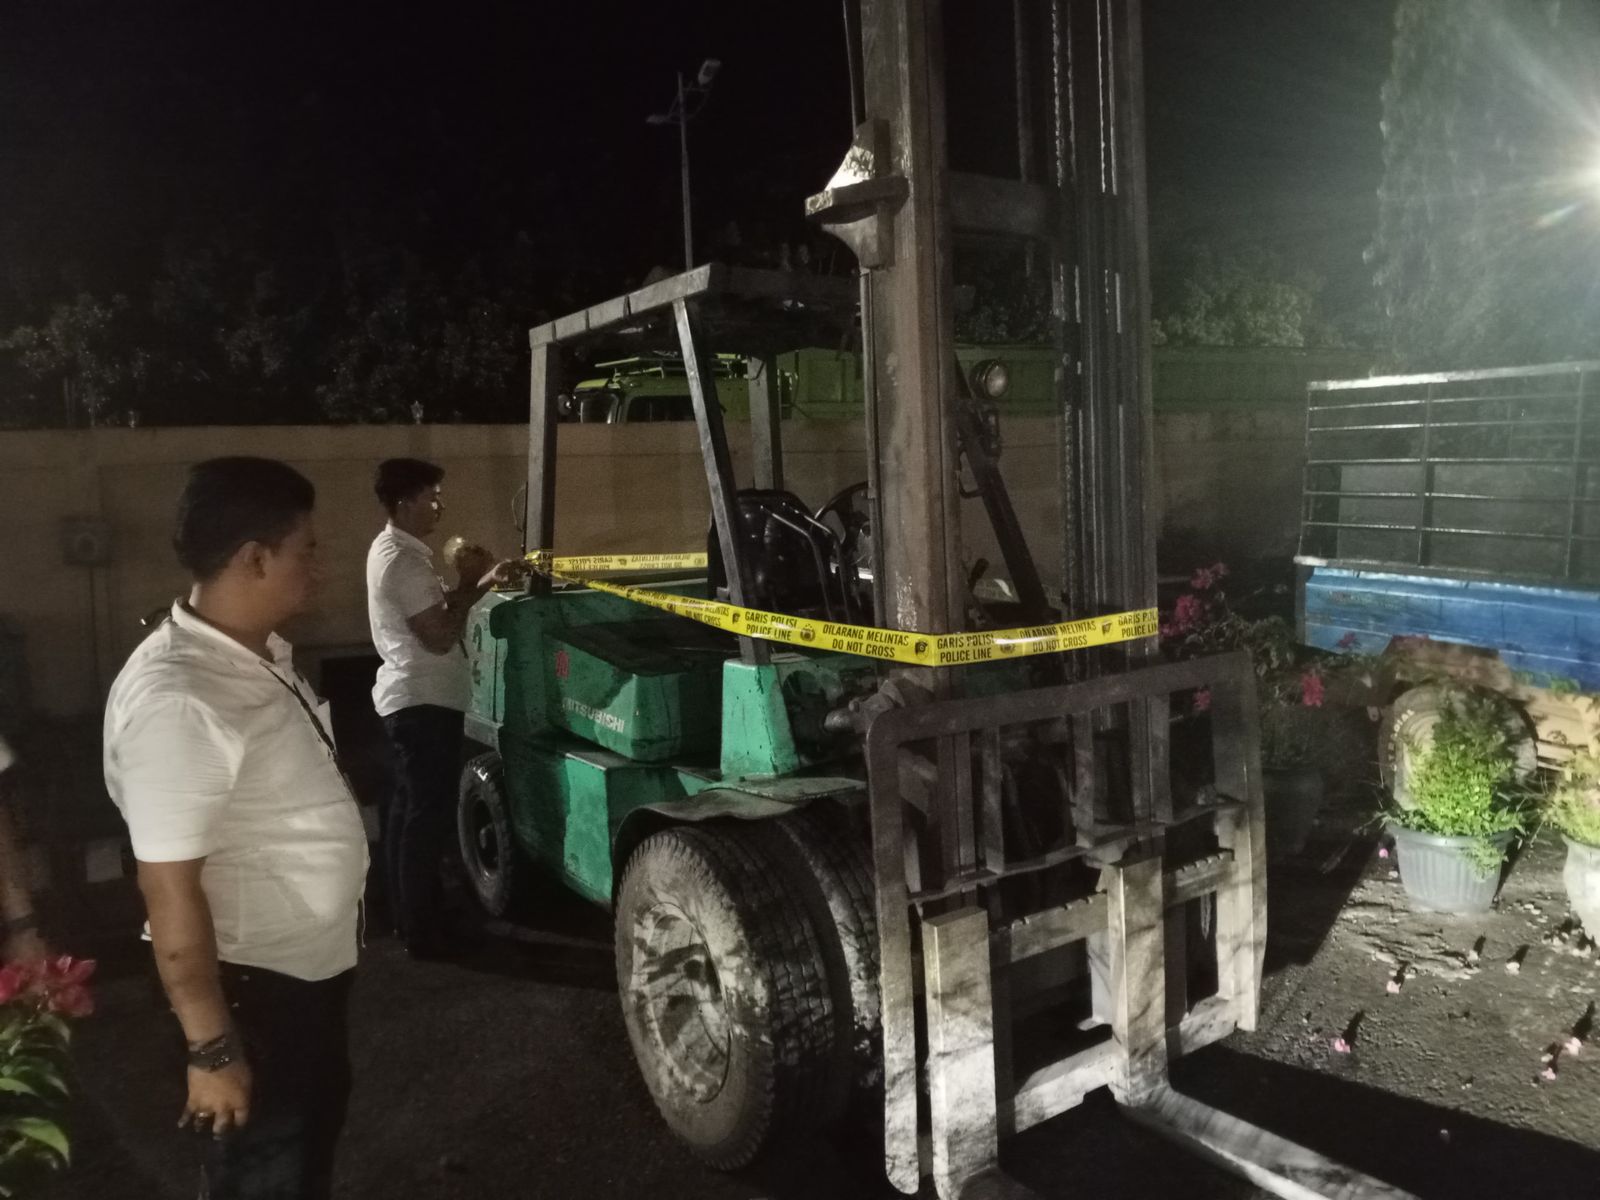 Karyawan Pabrik Karet di Musi Rawas Tewas Terlindas Forklift oleh Rekannya Sendiri 